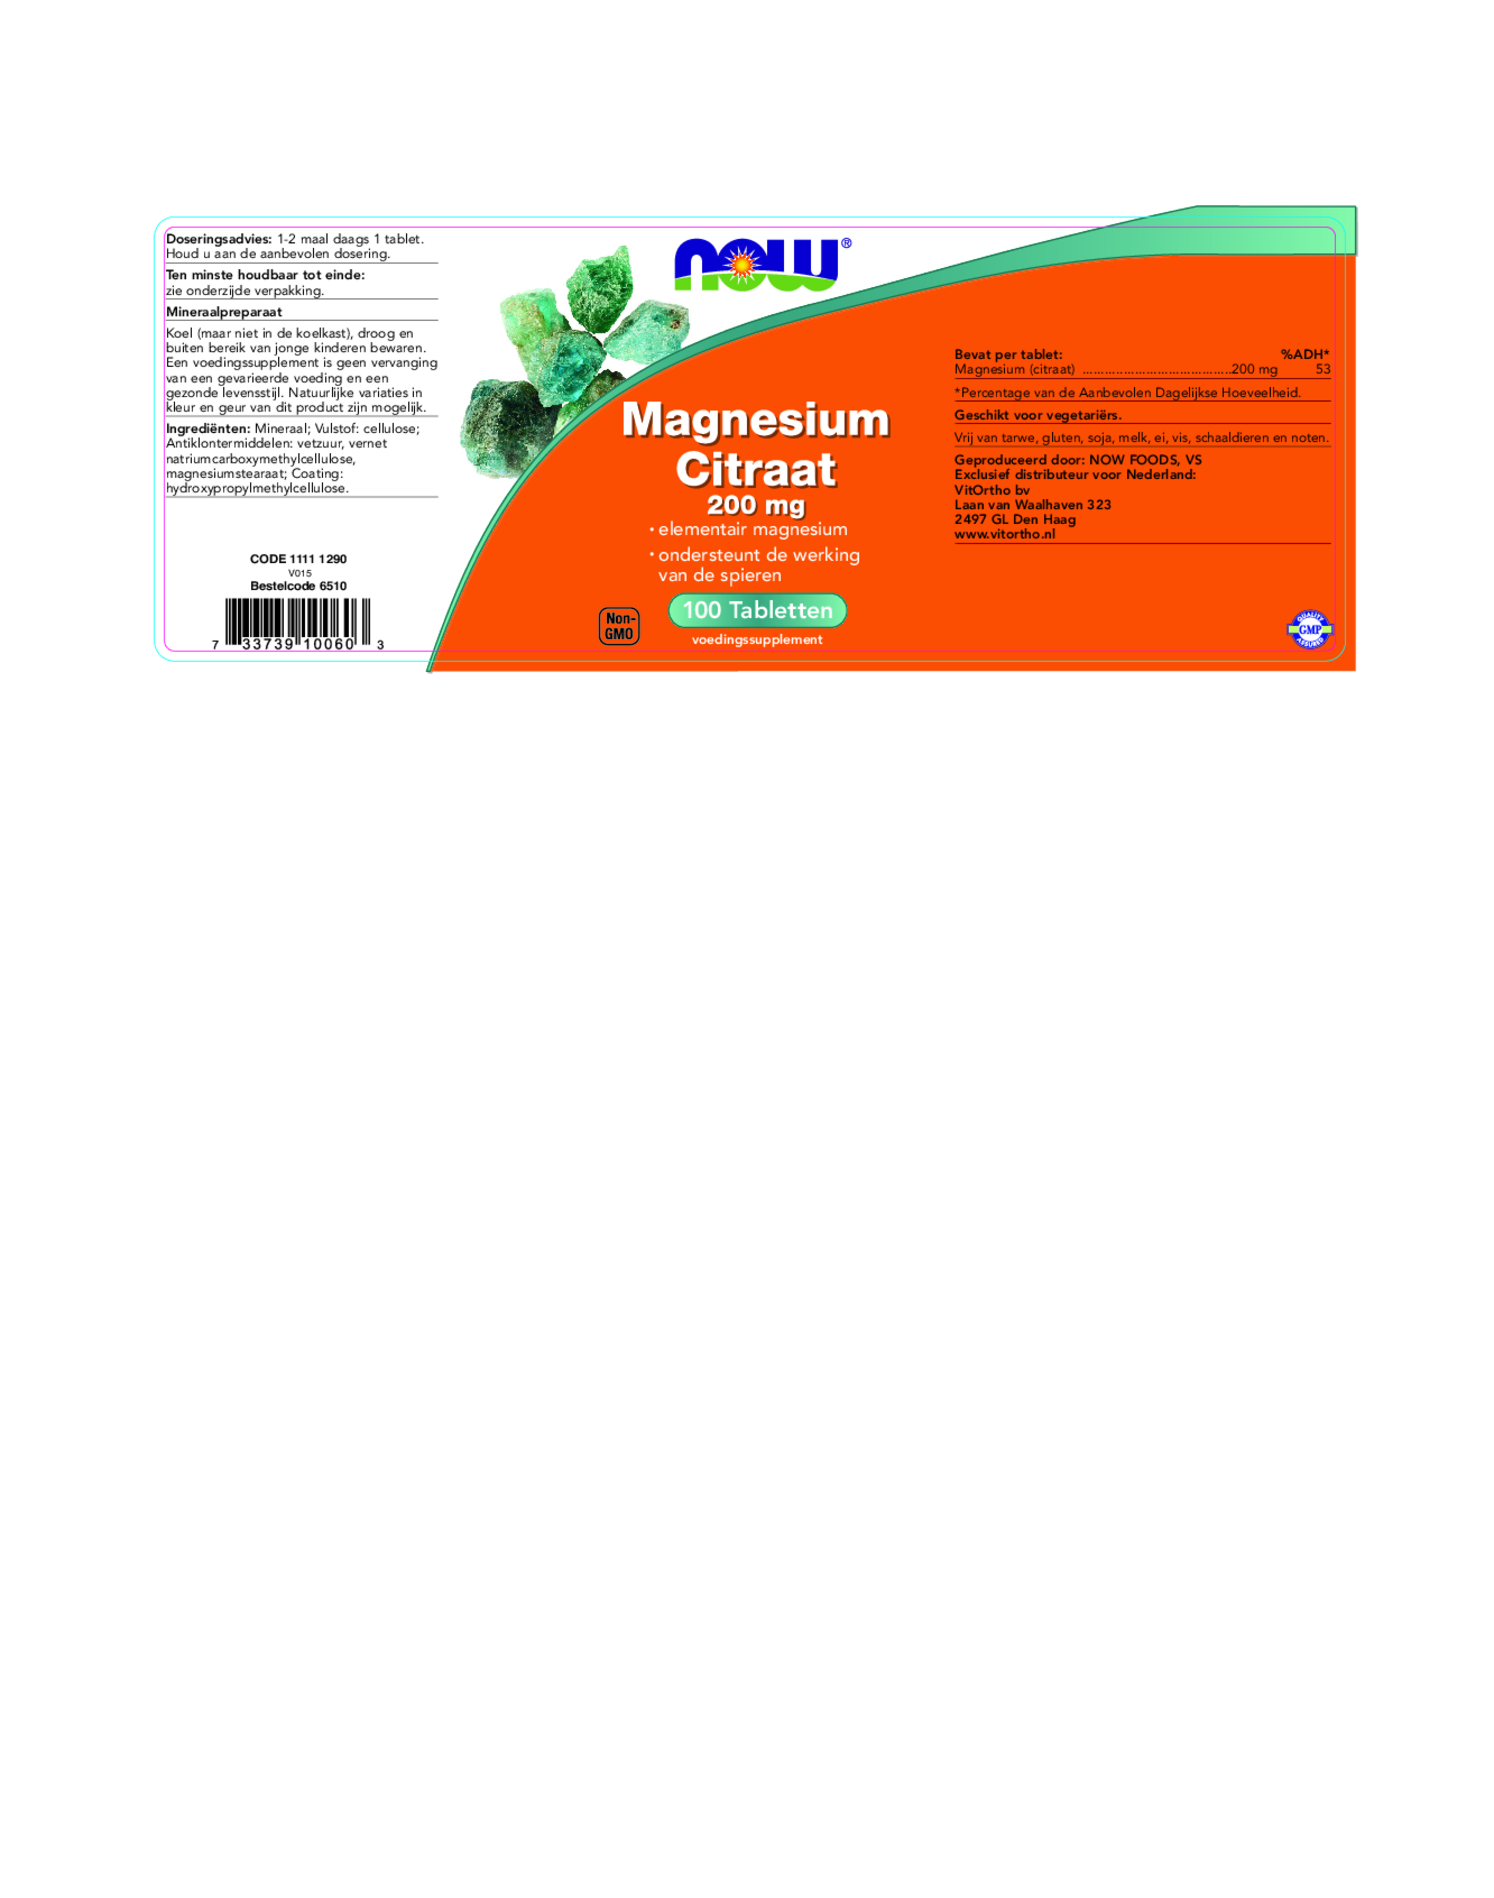 Magnesium Citraat 200mg DUO Tabletten afbeelding van document #1, etiket